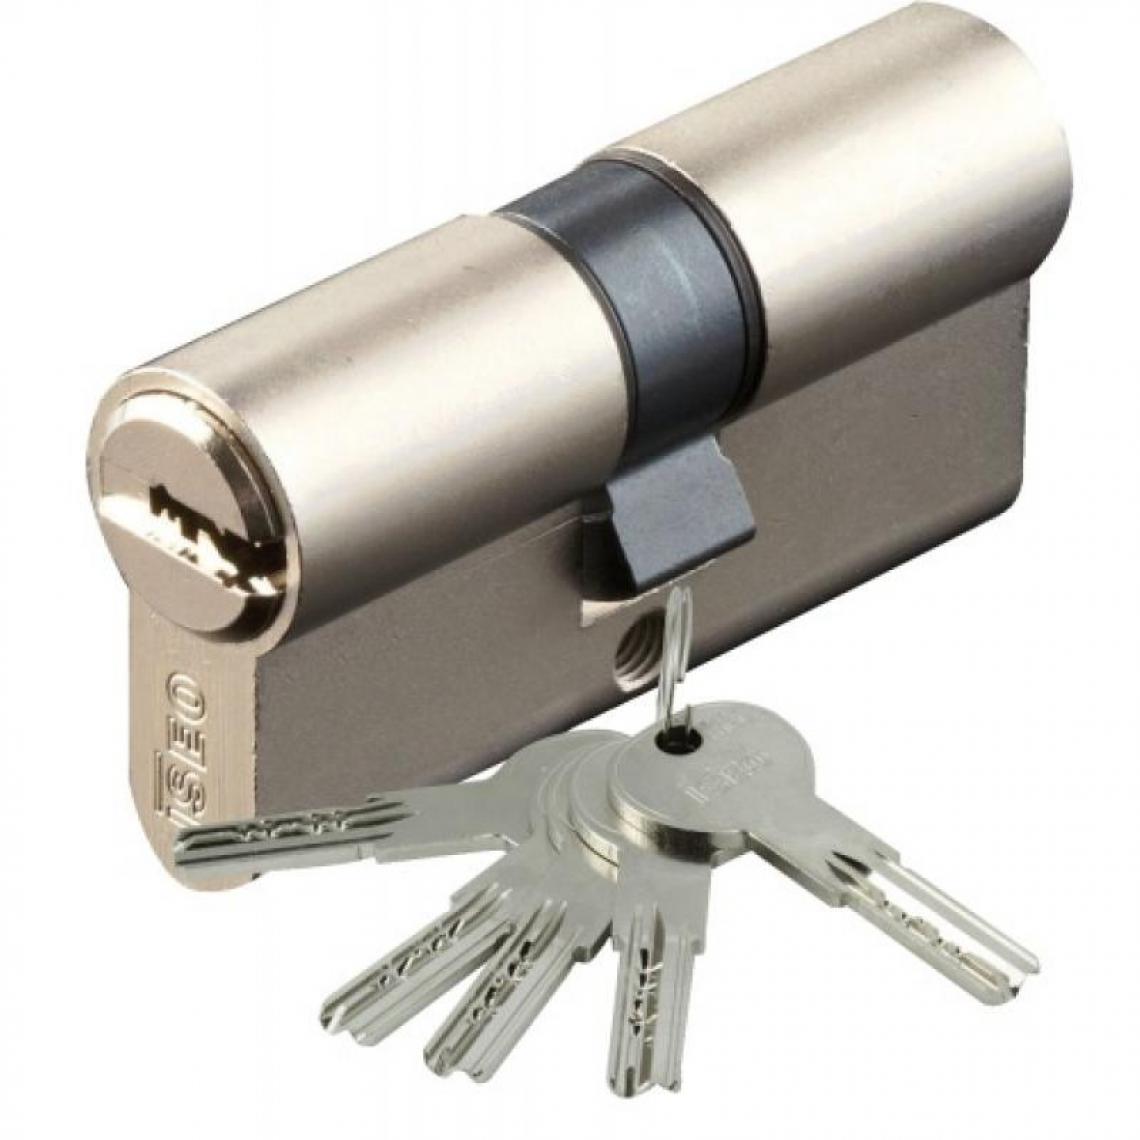 Iseo City - Cylindre type ISR6 sur numéro suivi AGL 697 laiton nickelé 3 clés 40 x 45 - Cylindre de porte